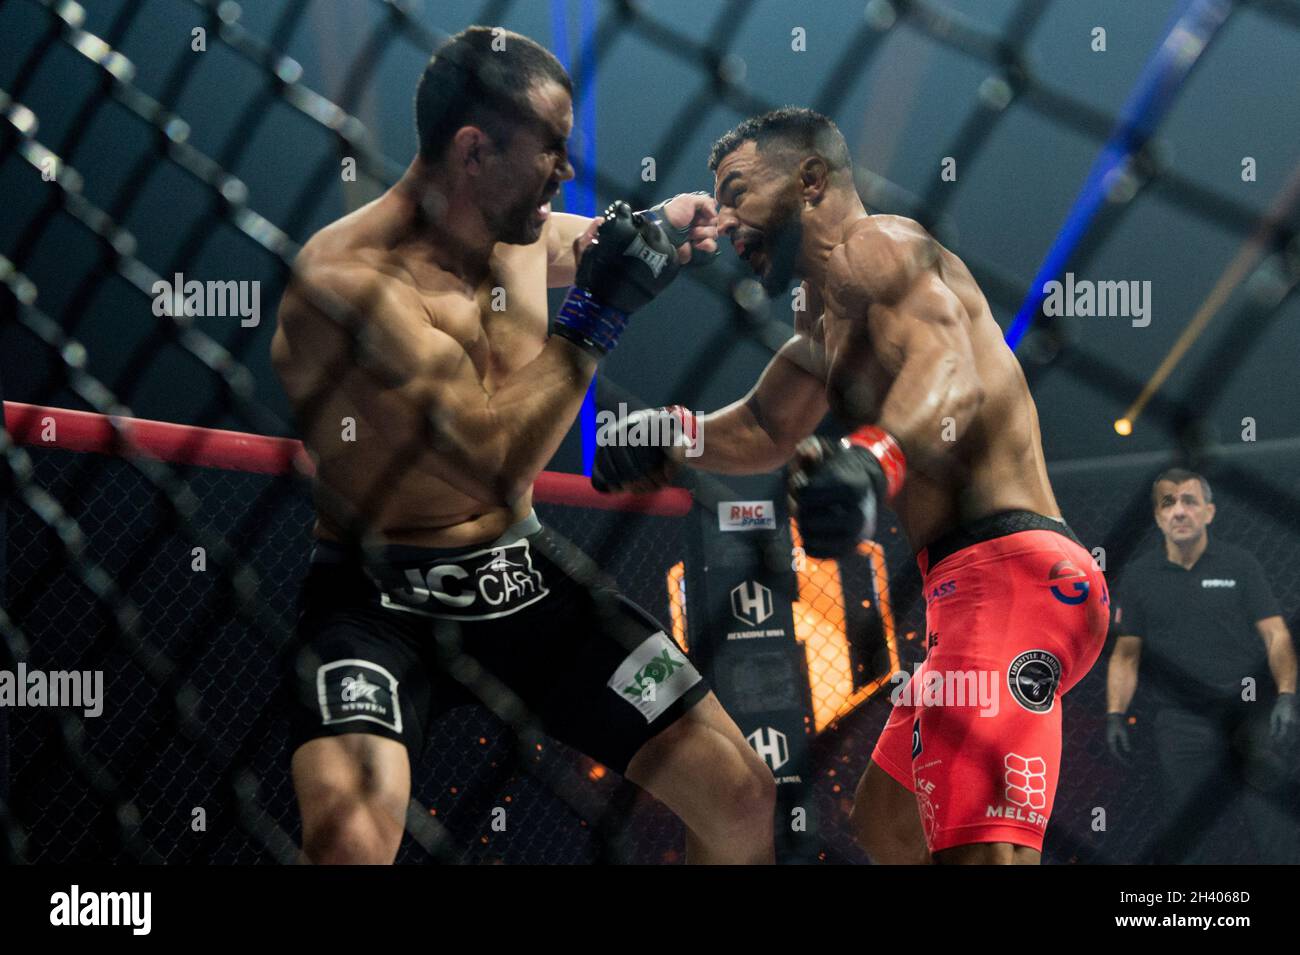 La galerie Kick Boxing / Muay Thaï – Hexagone Combat